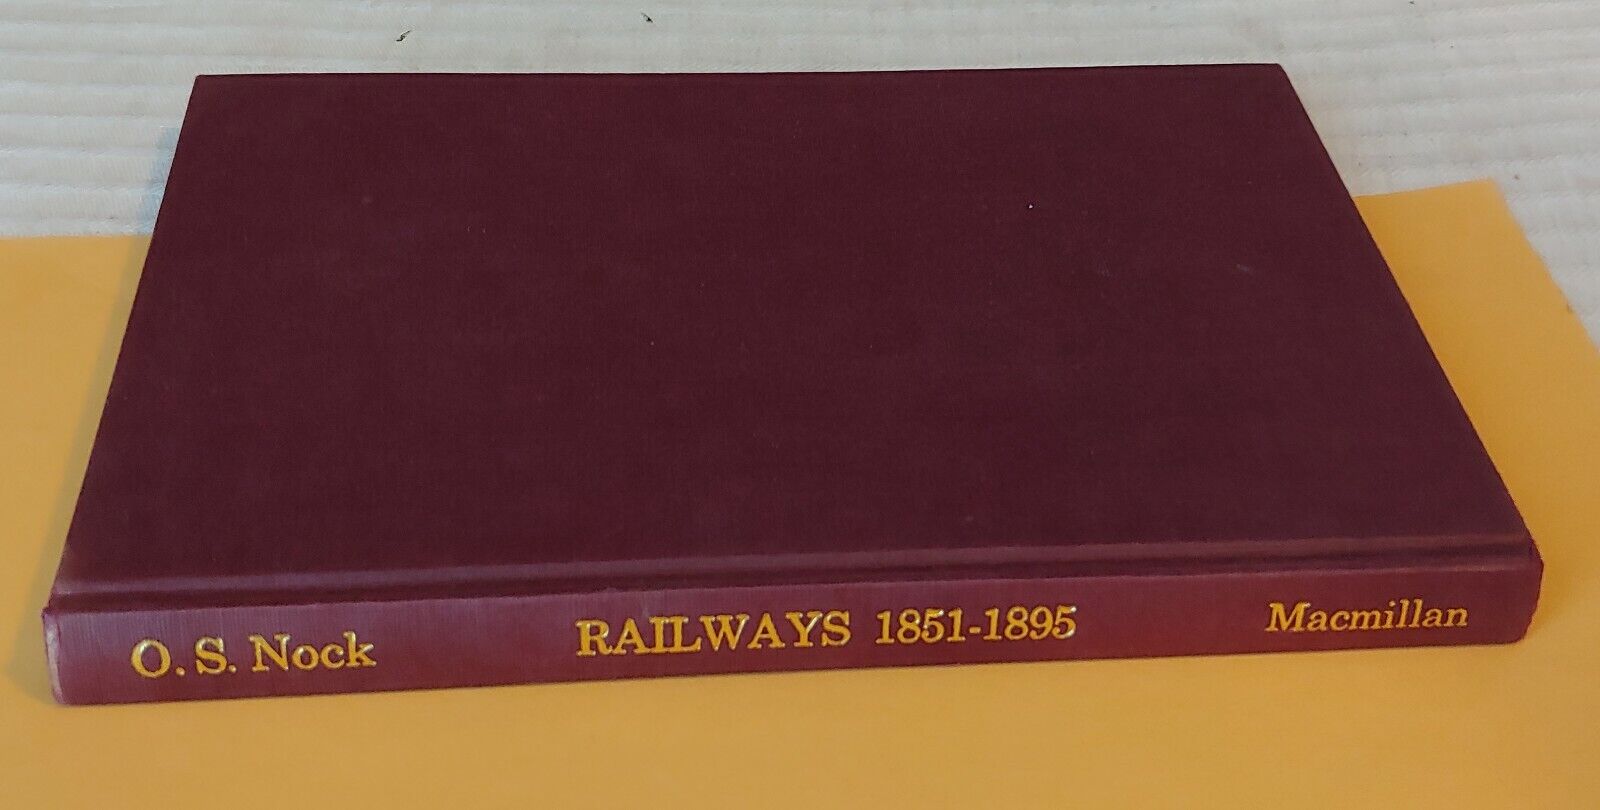 ***VINTAGE 1973 RAILWAYS 1851-1895 HC BOOK***ILLUSTRATED